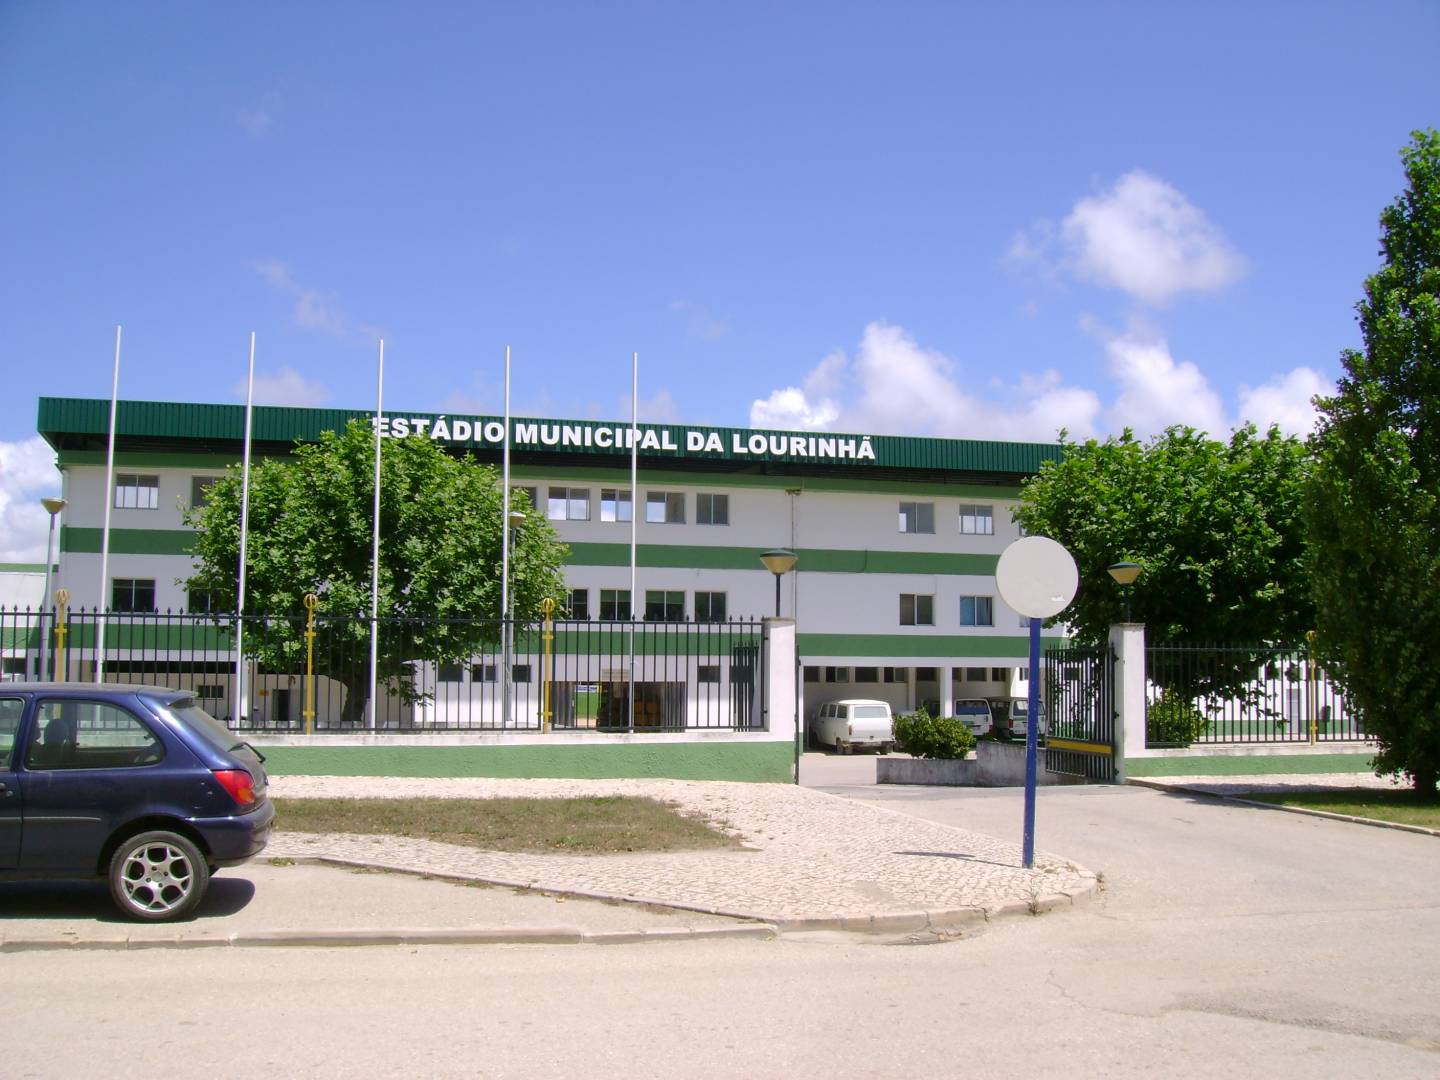 Estádio Municipal da Lourinhã